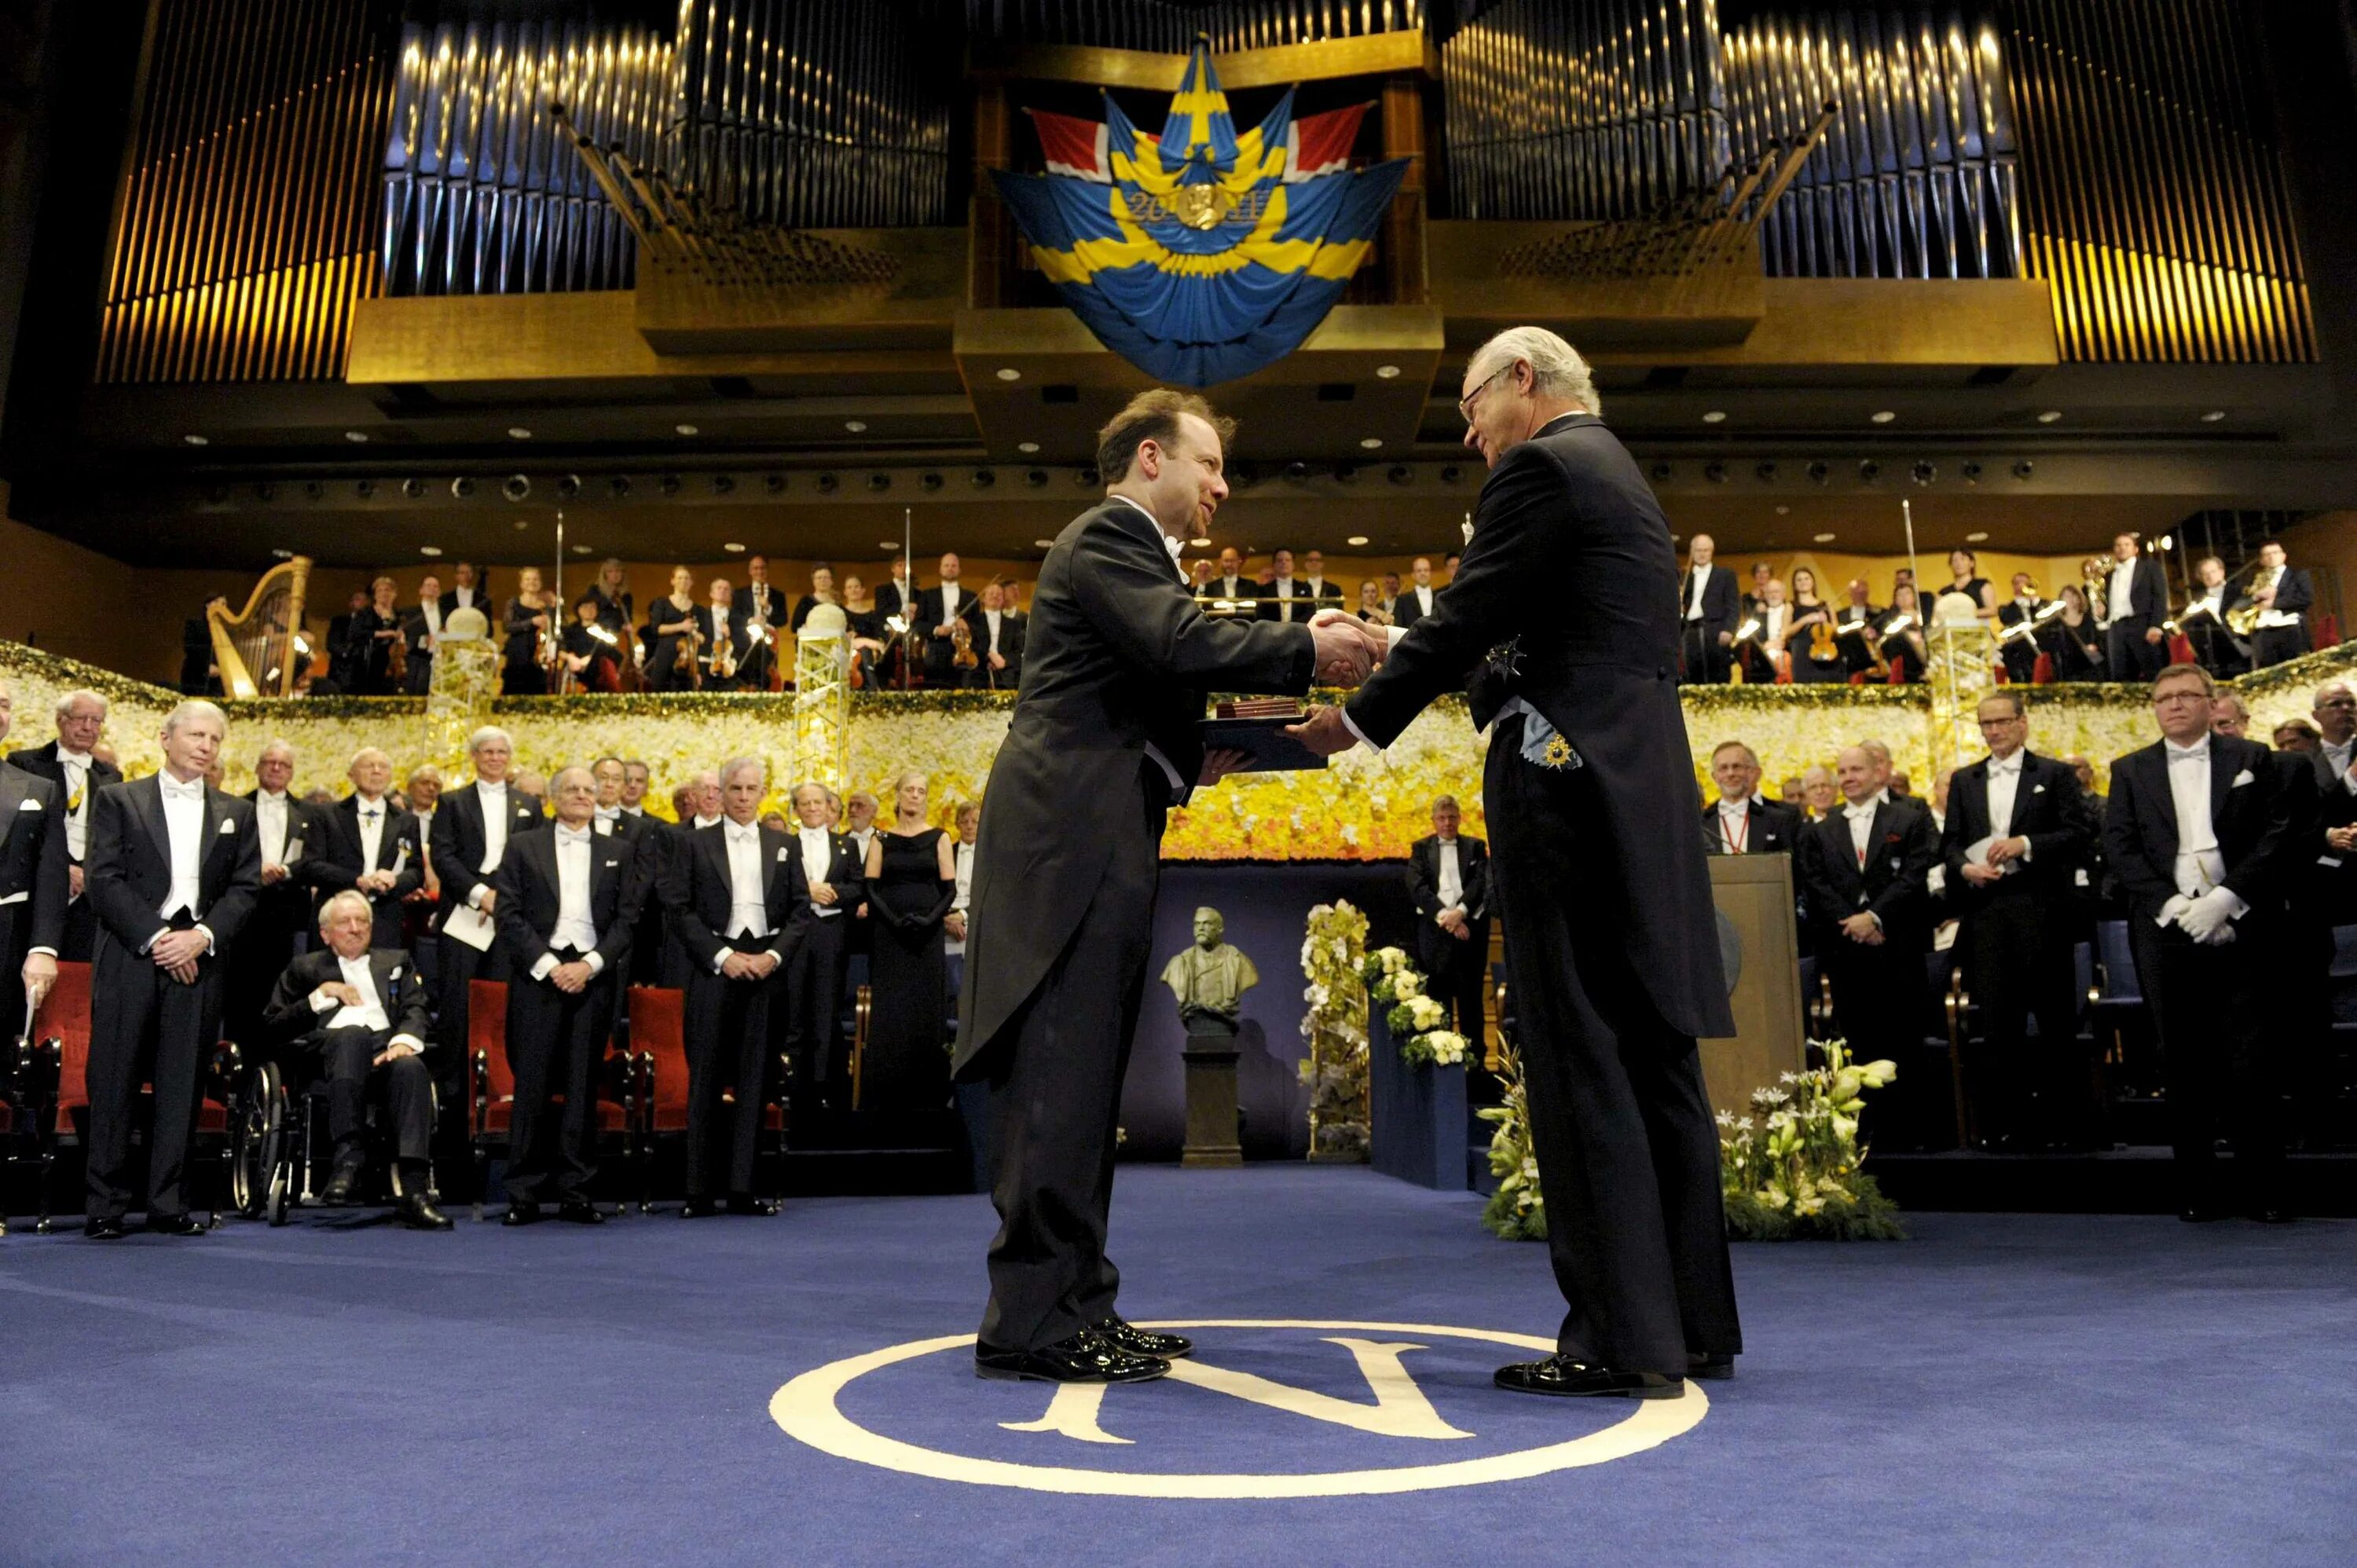 Нобелевская премия начало. Награждение Нобелевской премией. Церемония вручения Нобелевской премии в Швеции. Нобелевский день — церемония вручения Нобелевской премии.